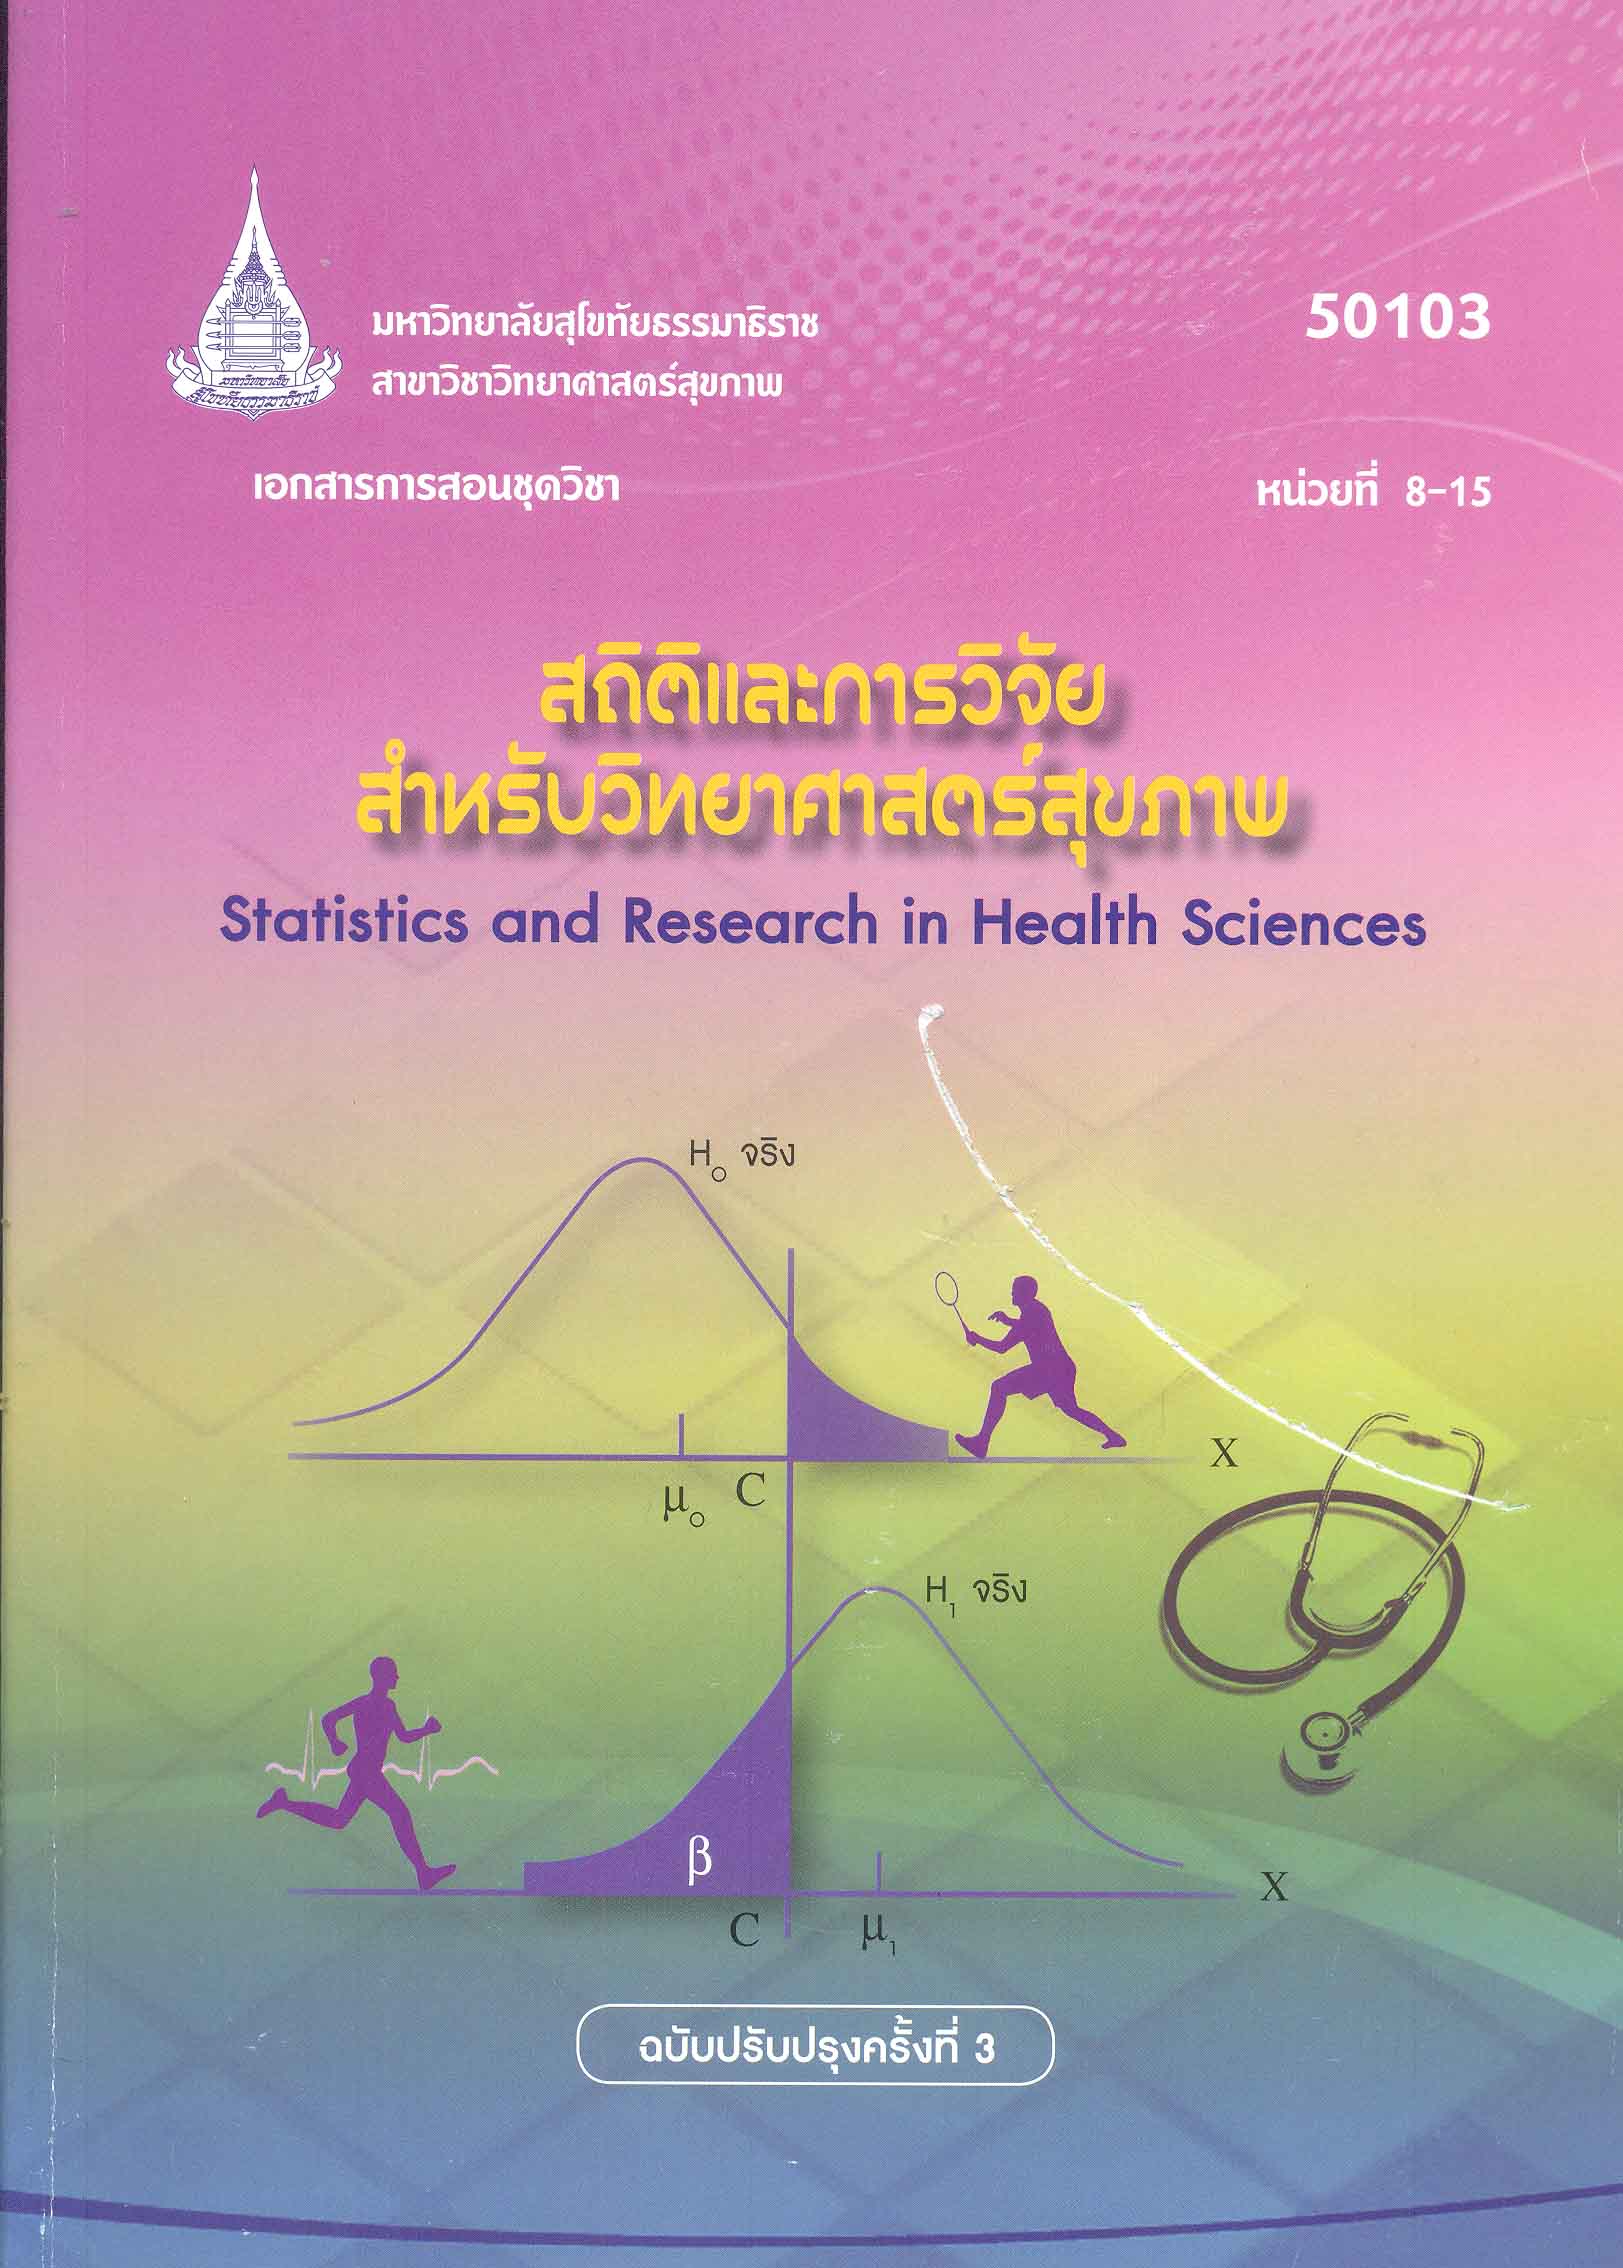 เอกสารการสอนชุดวิชา สถิติและการวิจัยสำหรับวิทยาศาสตร์สุขภาพ หน่วยที่ 8-15